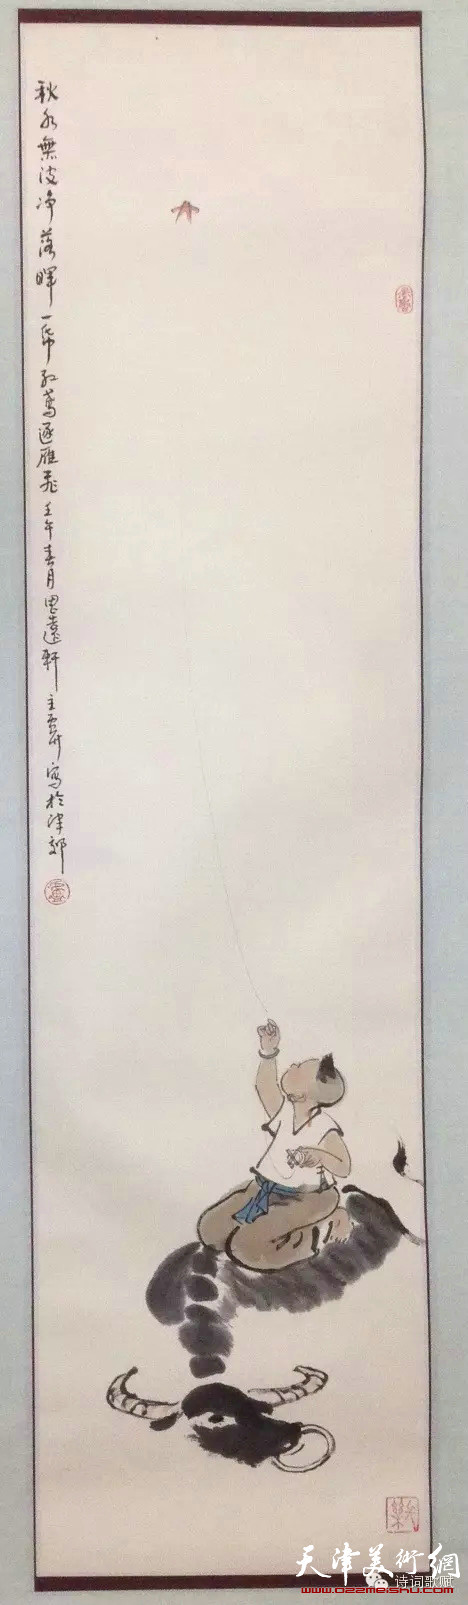 卢东升的写意画—孩童系列作品。